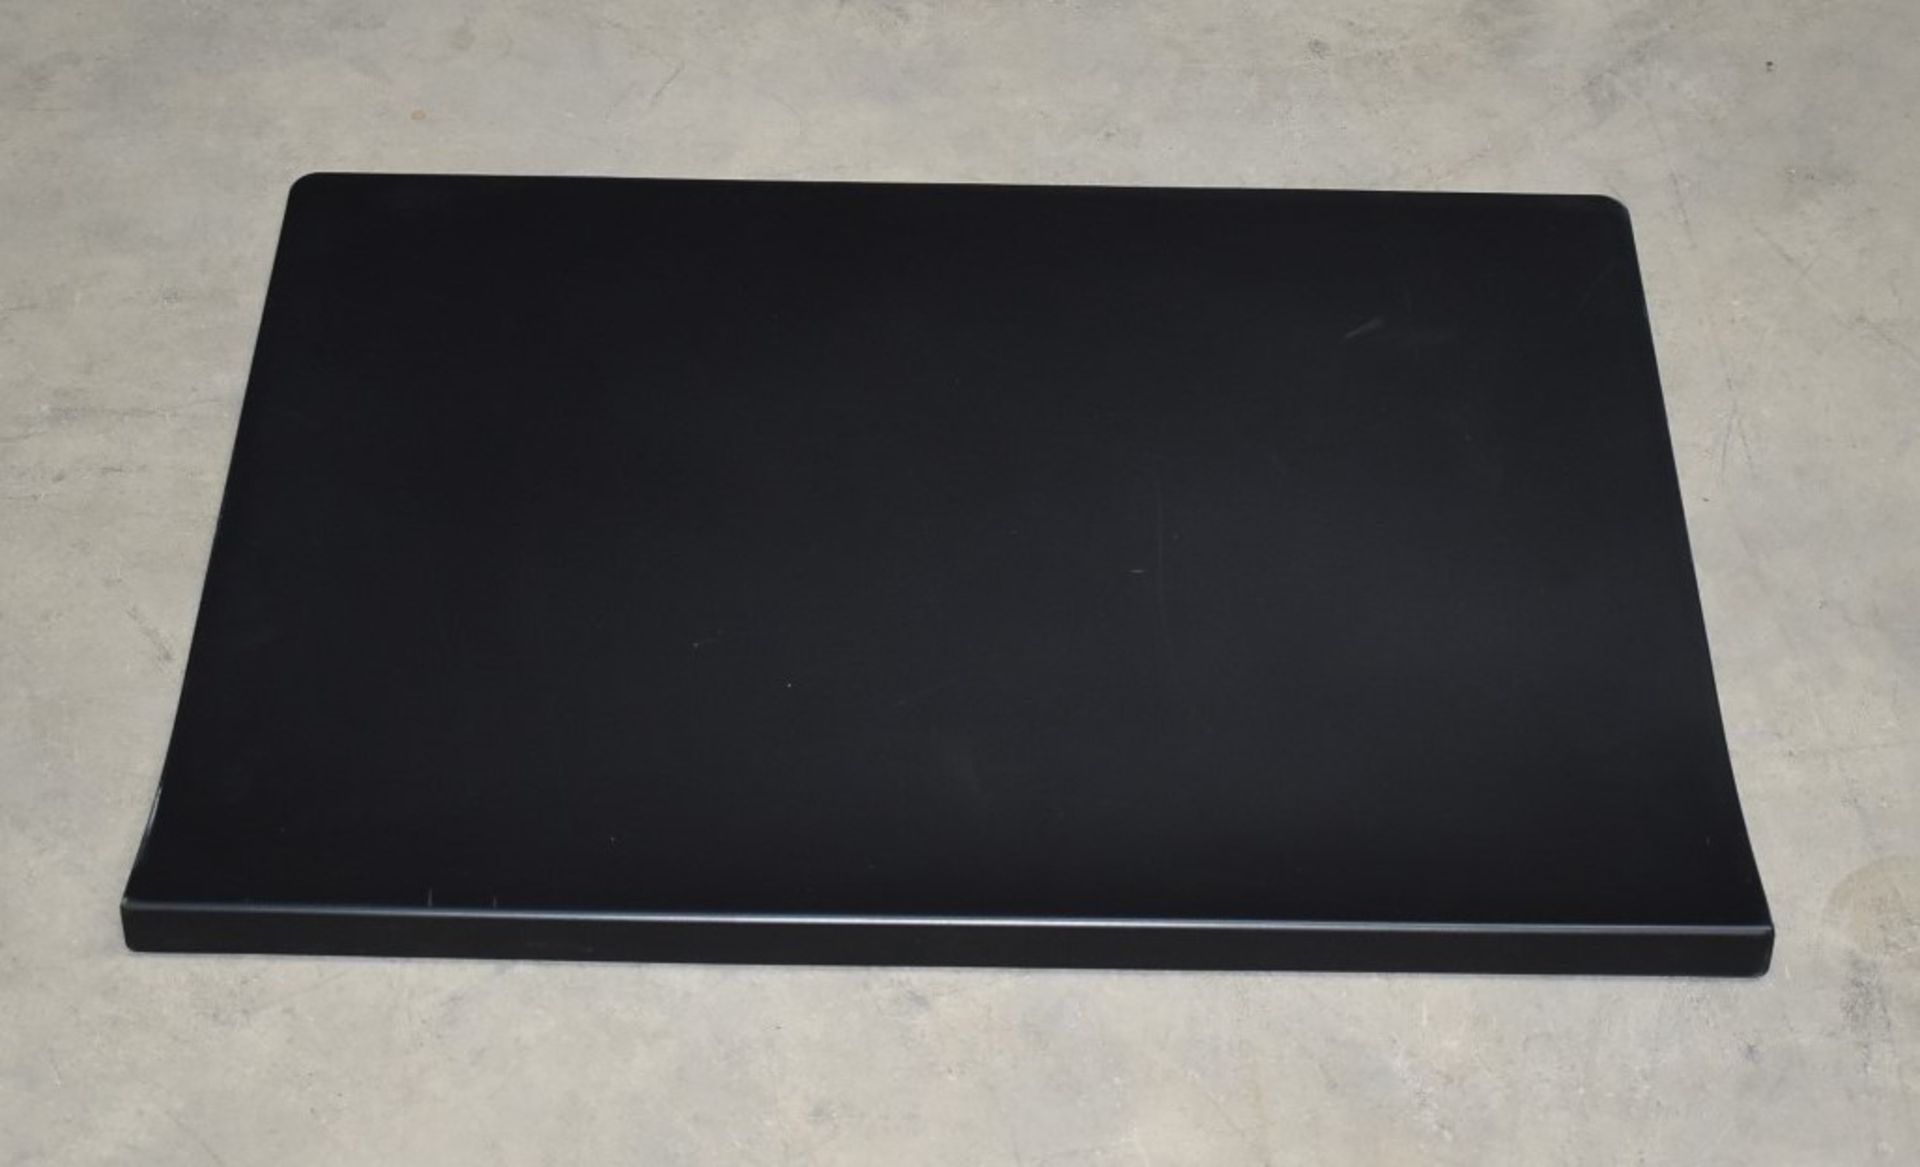 1 x Vitra Joyn Desk Pad in Black - Designed by Ronan & Erwan Bouroullec - Size: 70 x 50 cms - RRP £ - Image 3 of 4